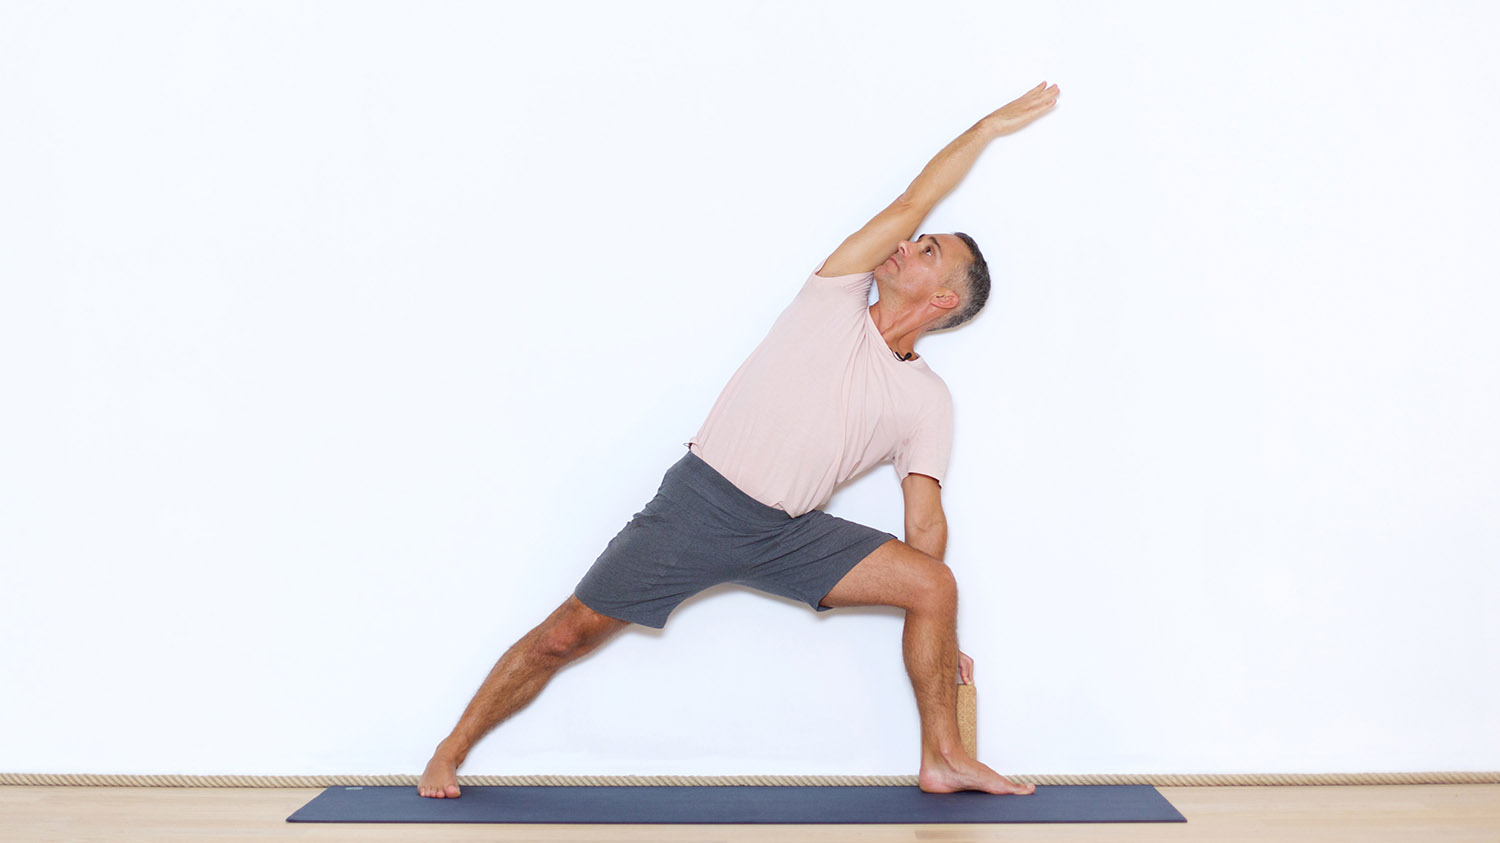 Pratiquer avec le mur 2/2 | Cours de yoga en ligne avec Benoît Le Gourriérec | Alignement